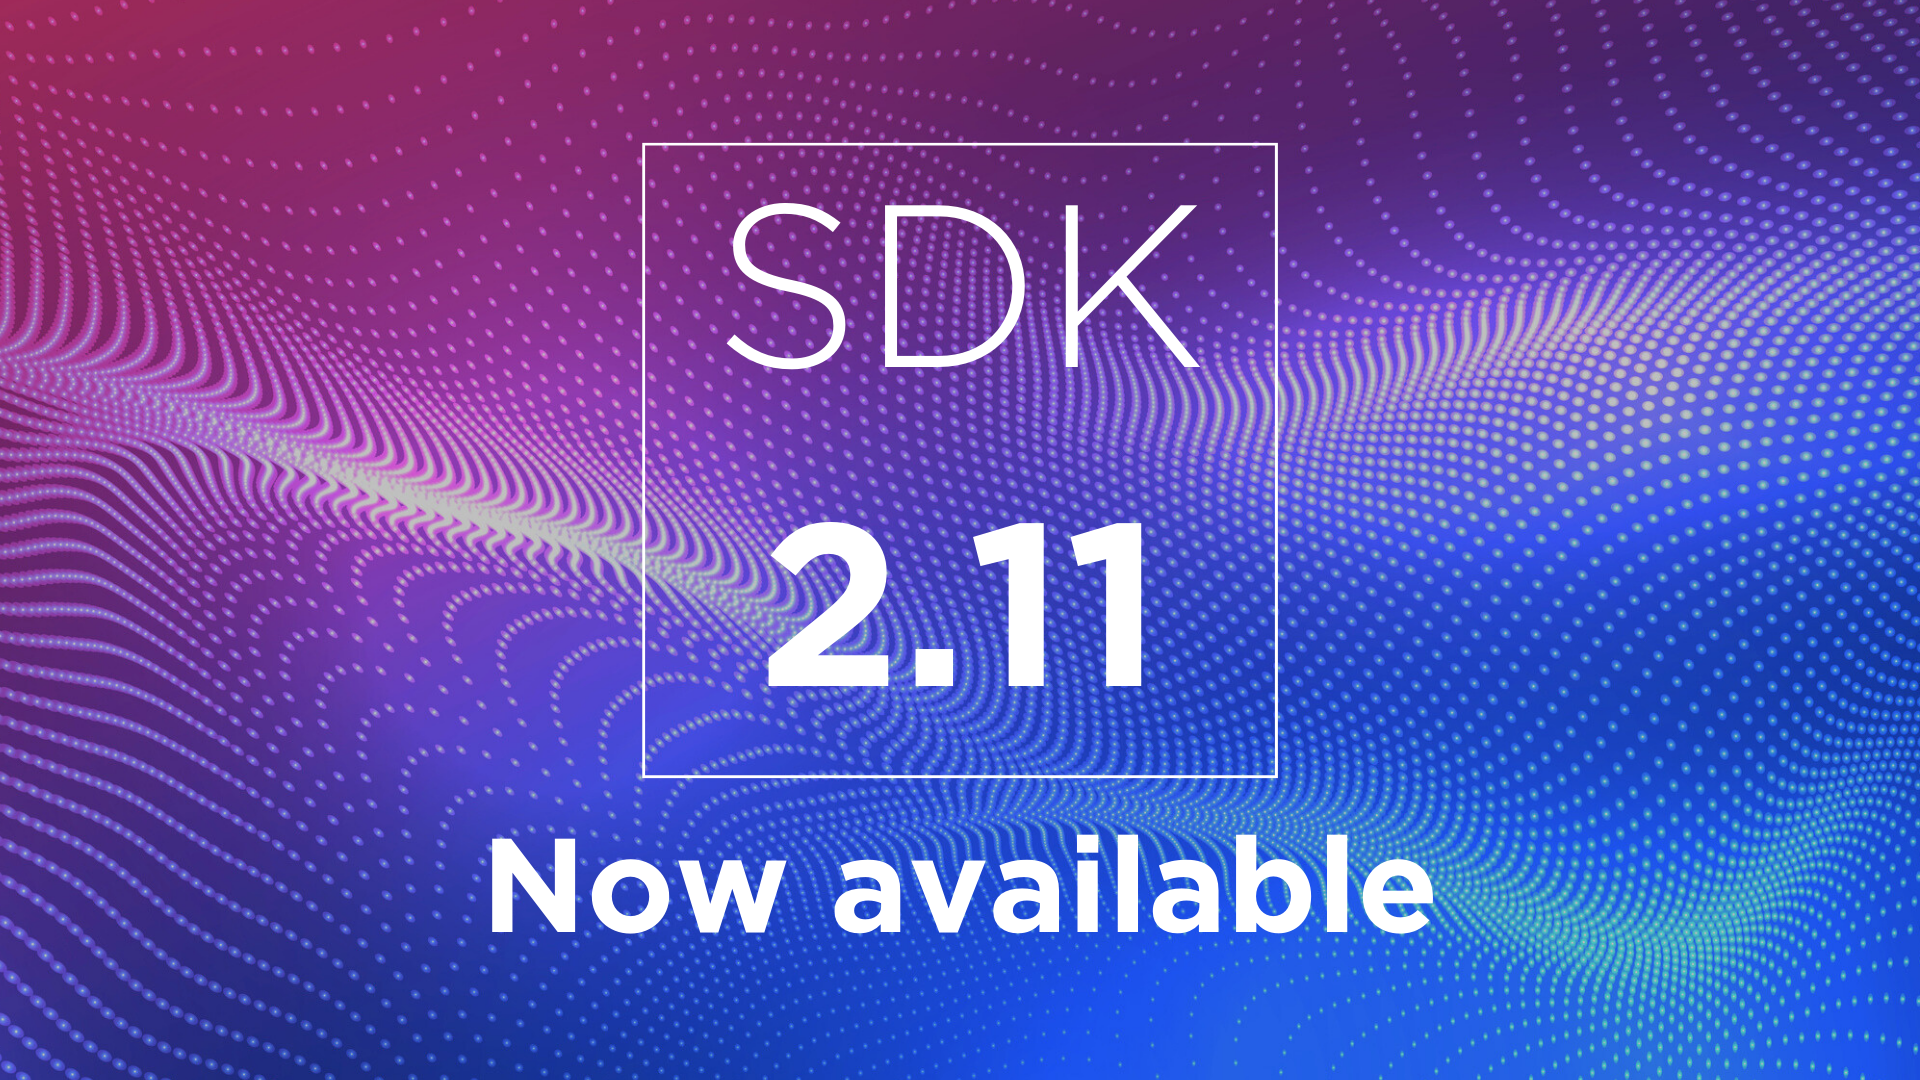 SDK 2.11: 简单网络和流程优化以提升速度